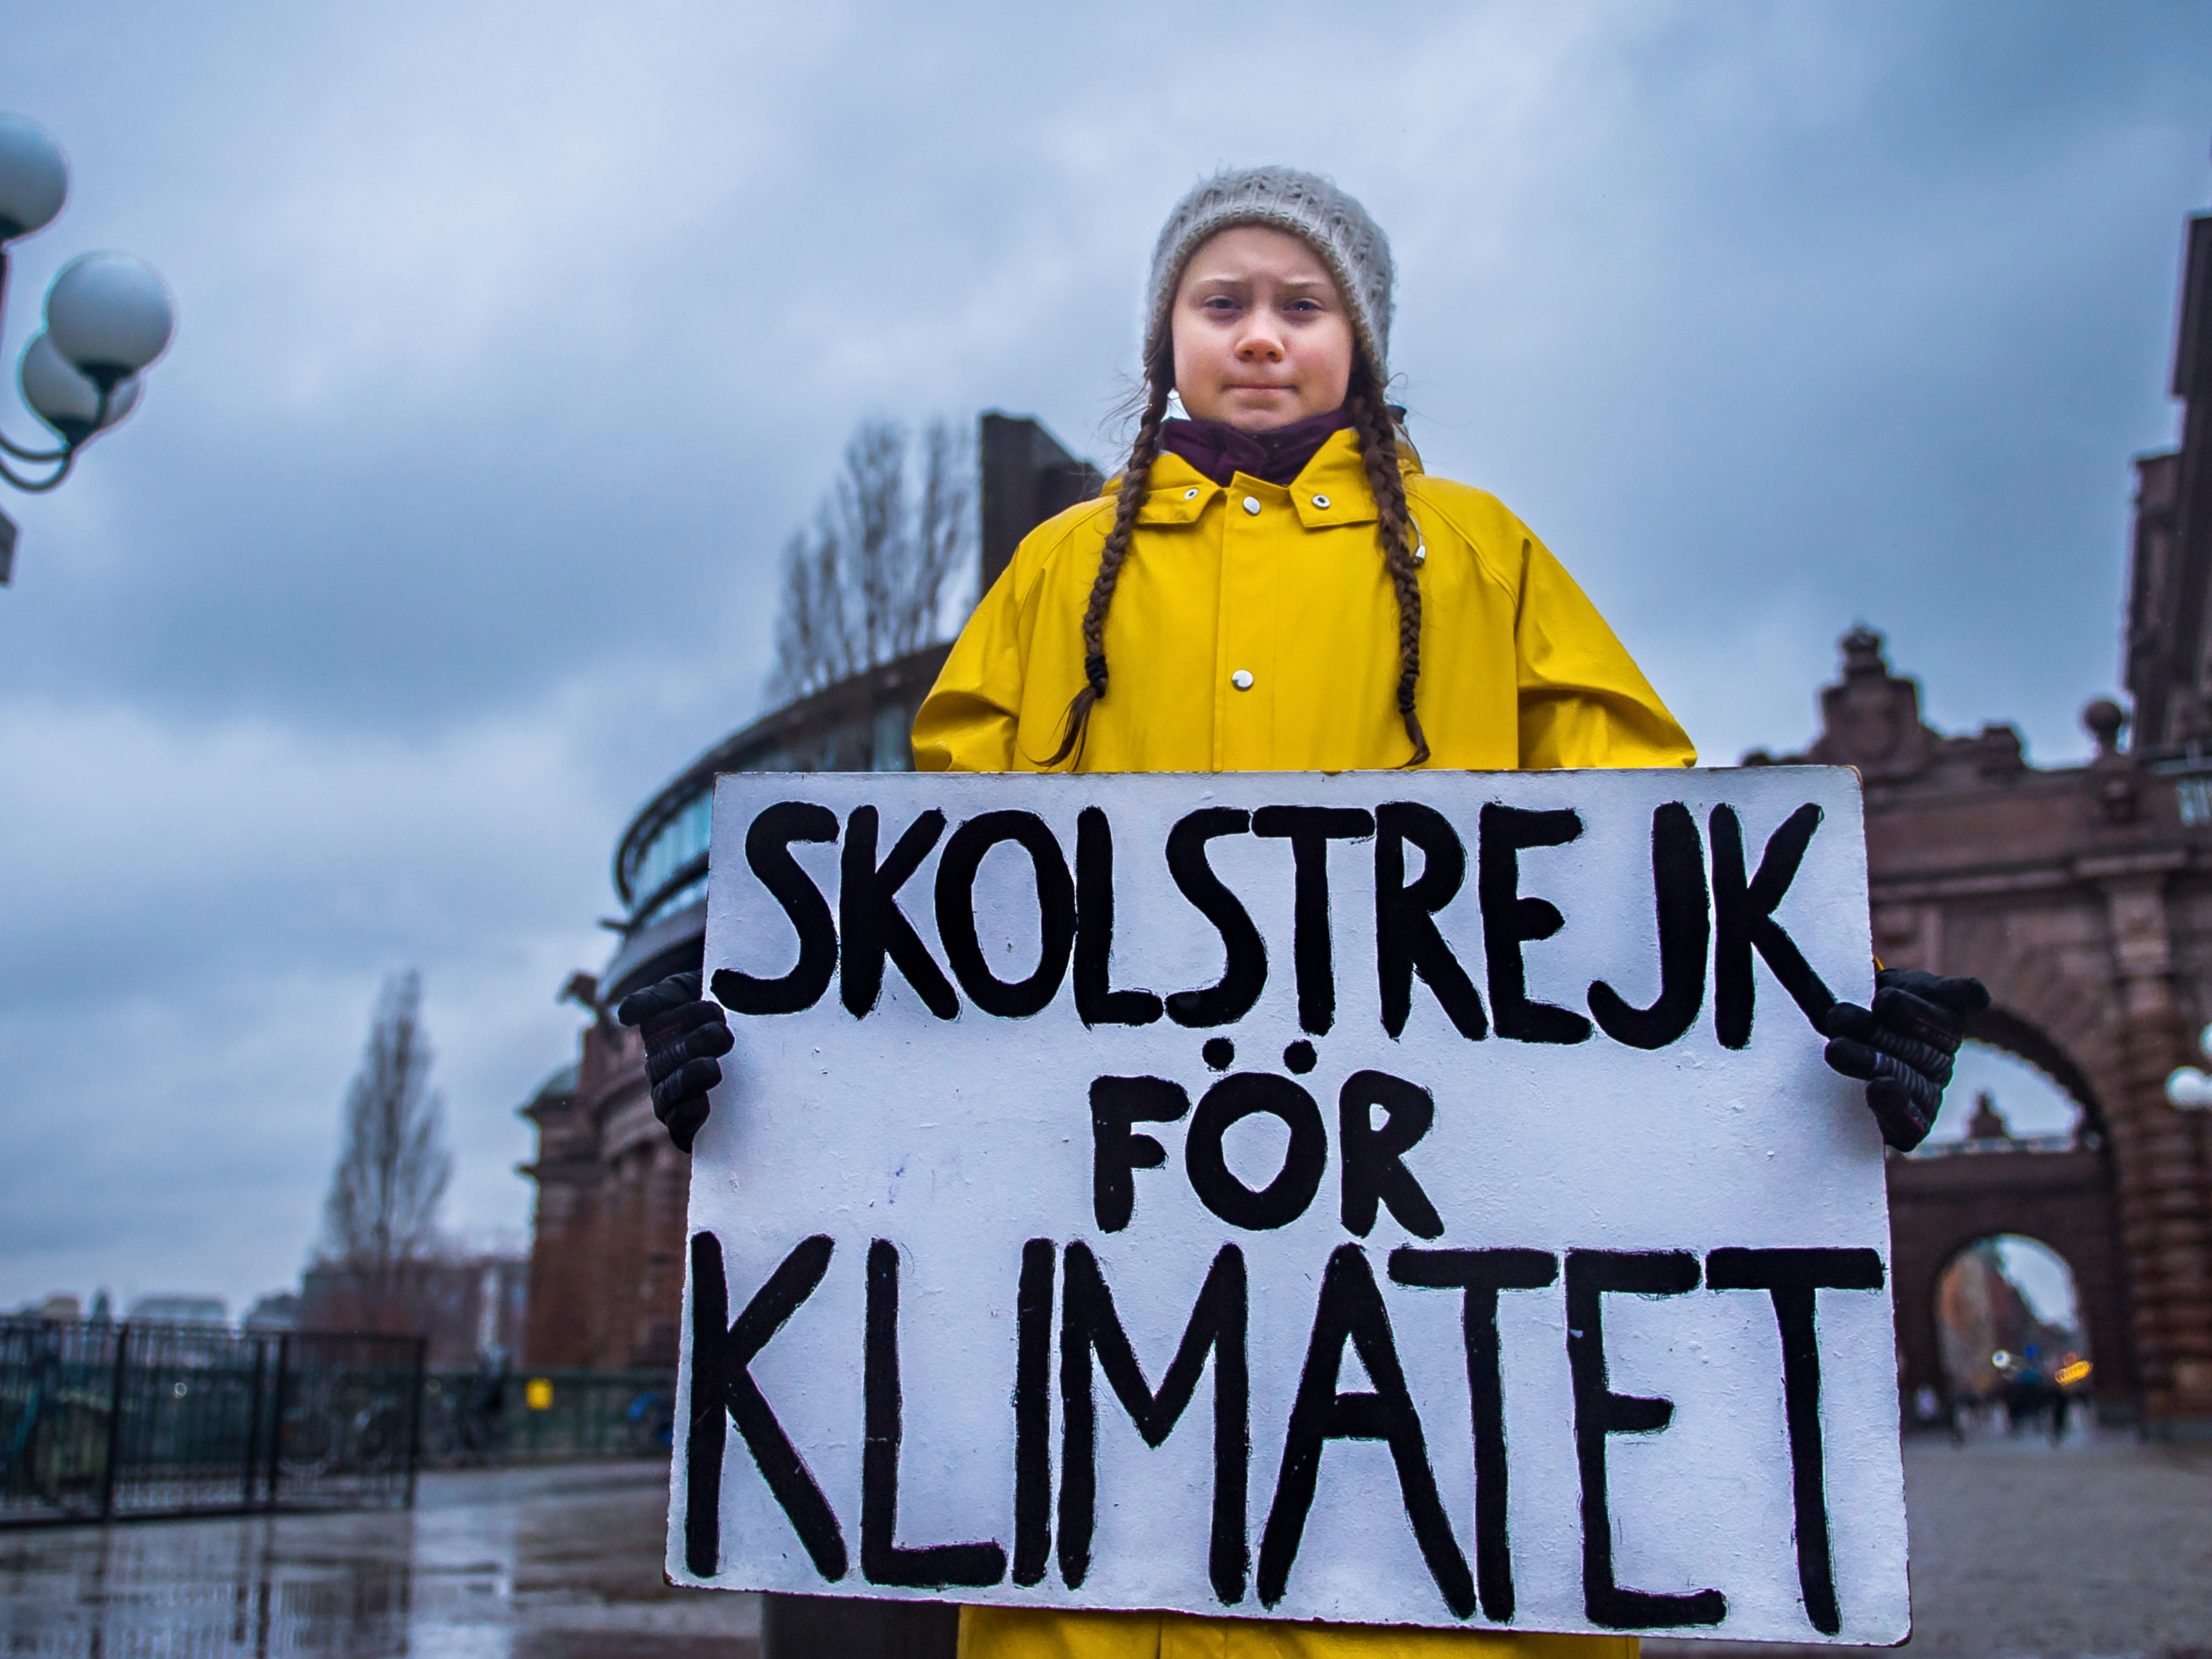 Greta Thunberg voert al jaren actie voor het klimaat met dit bord. Foto: EPA/Hanna Franzen